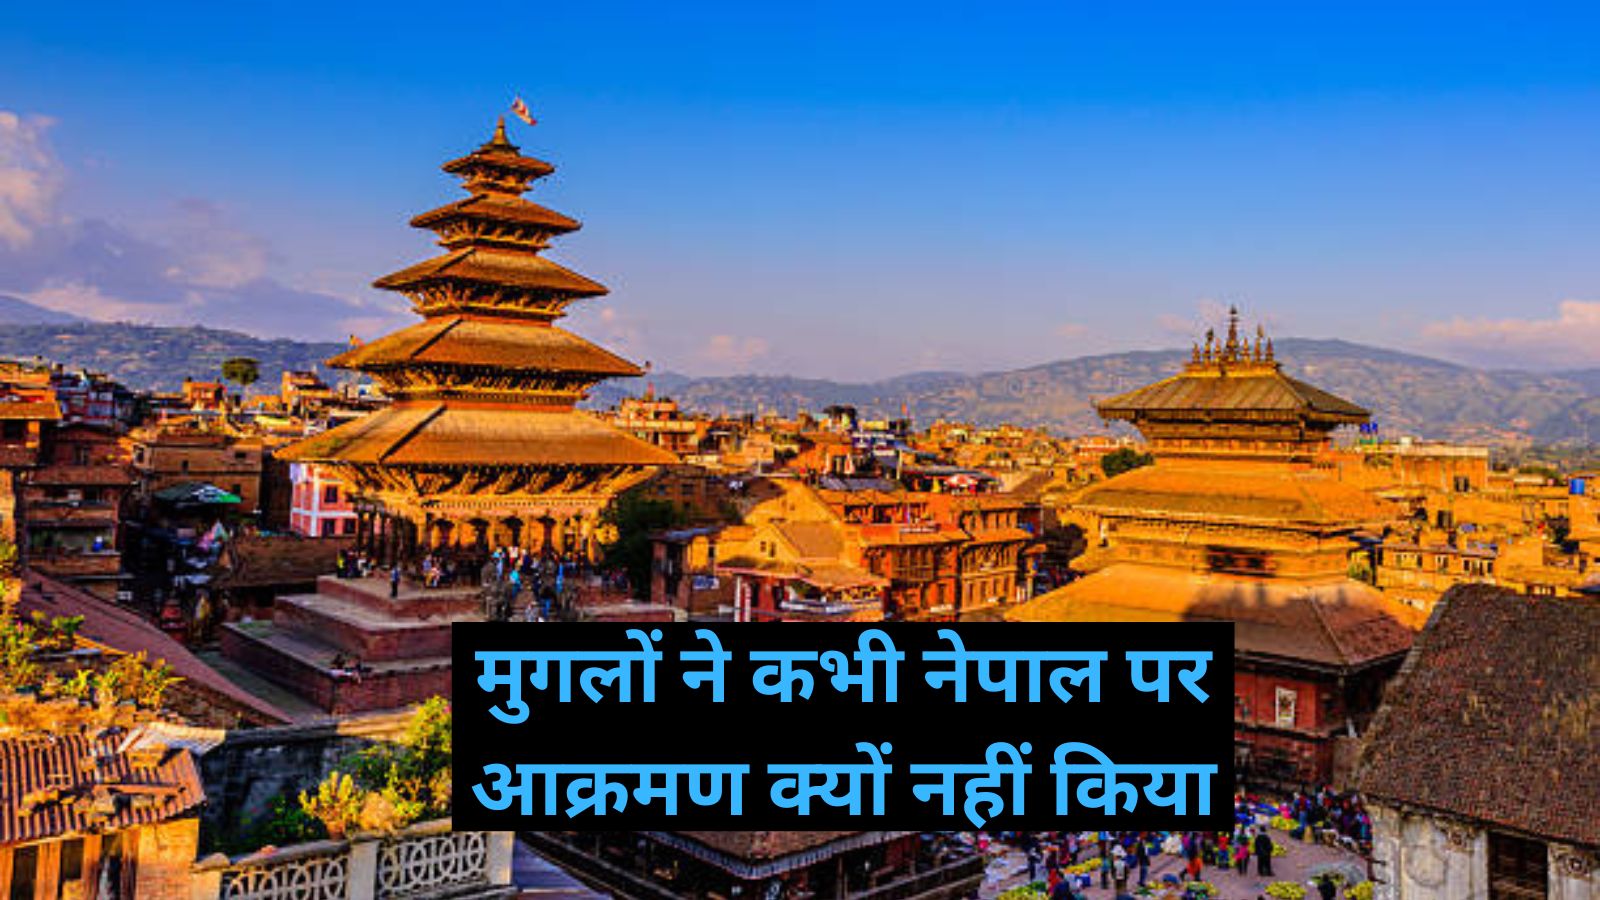 Sanskrit of Nepal: मुगलों ने कभी नेपाल पर आक्रमण क्यों नहीं किया? जानिए इसके पीछे का कारण